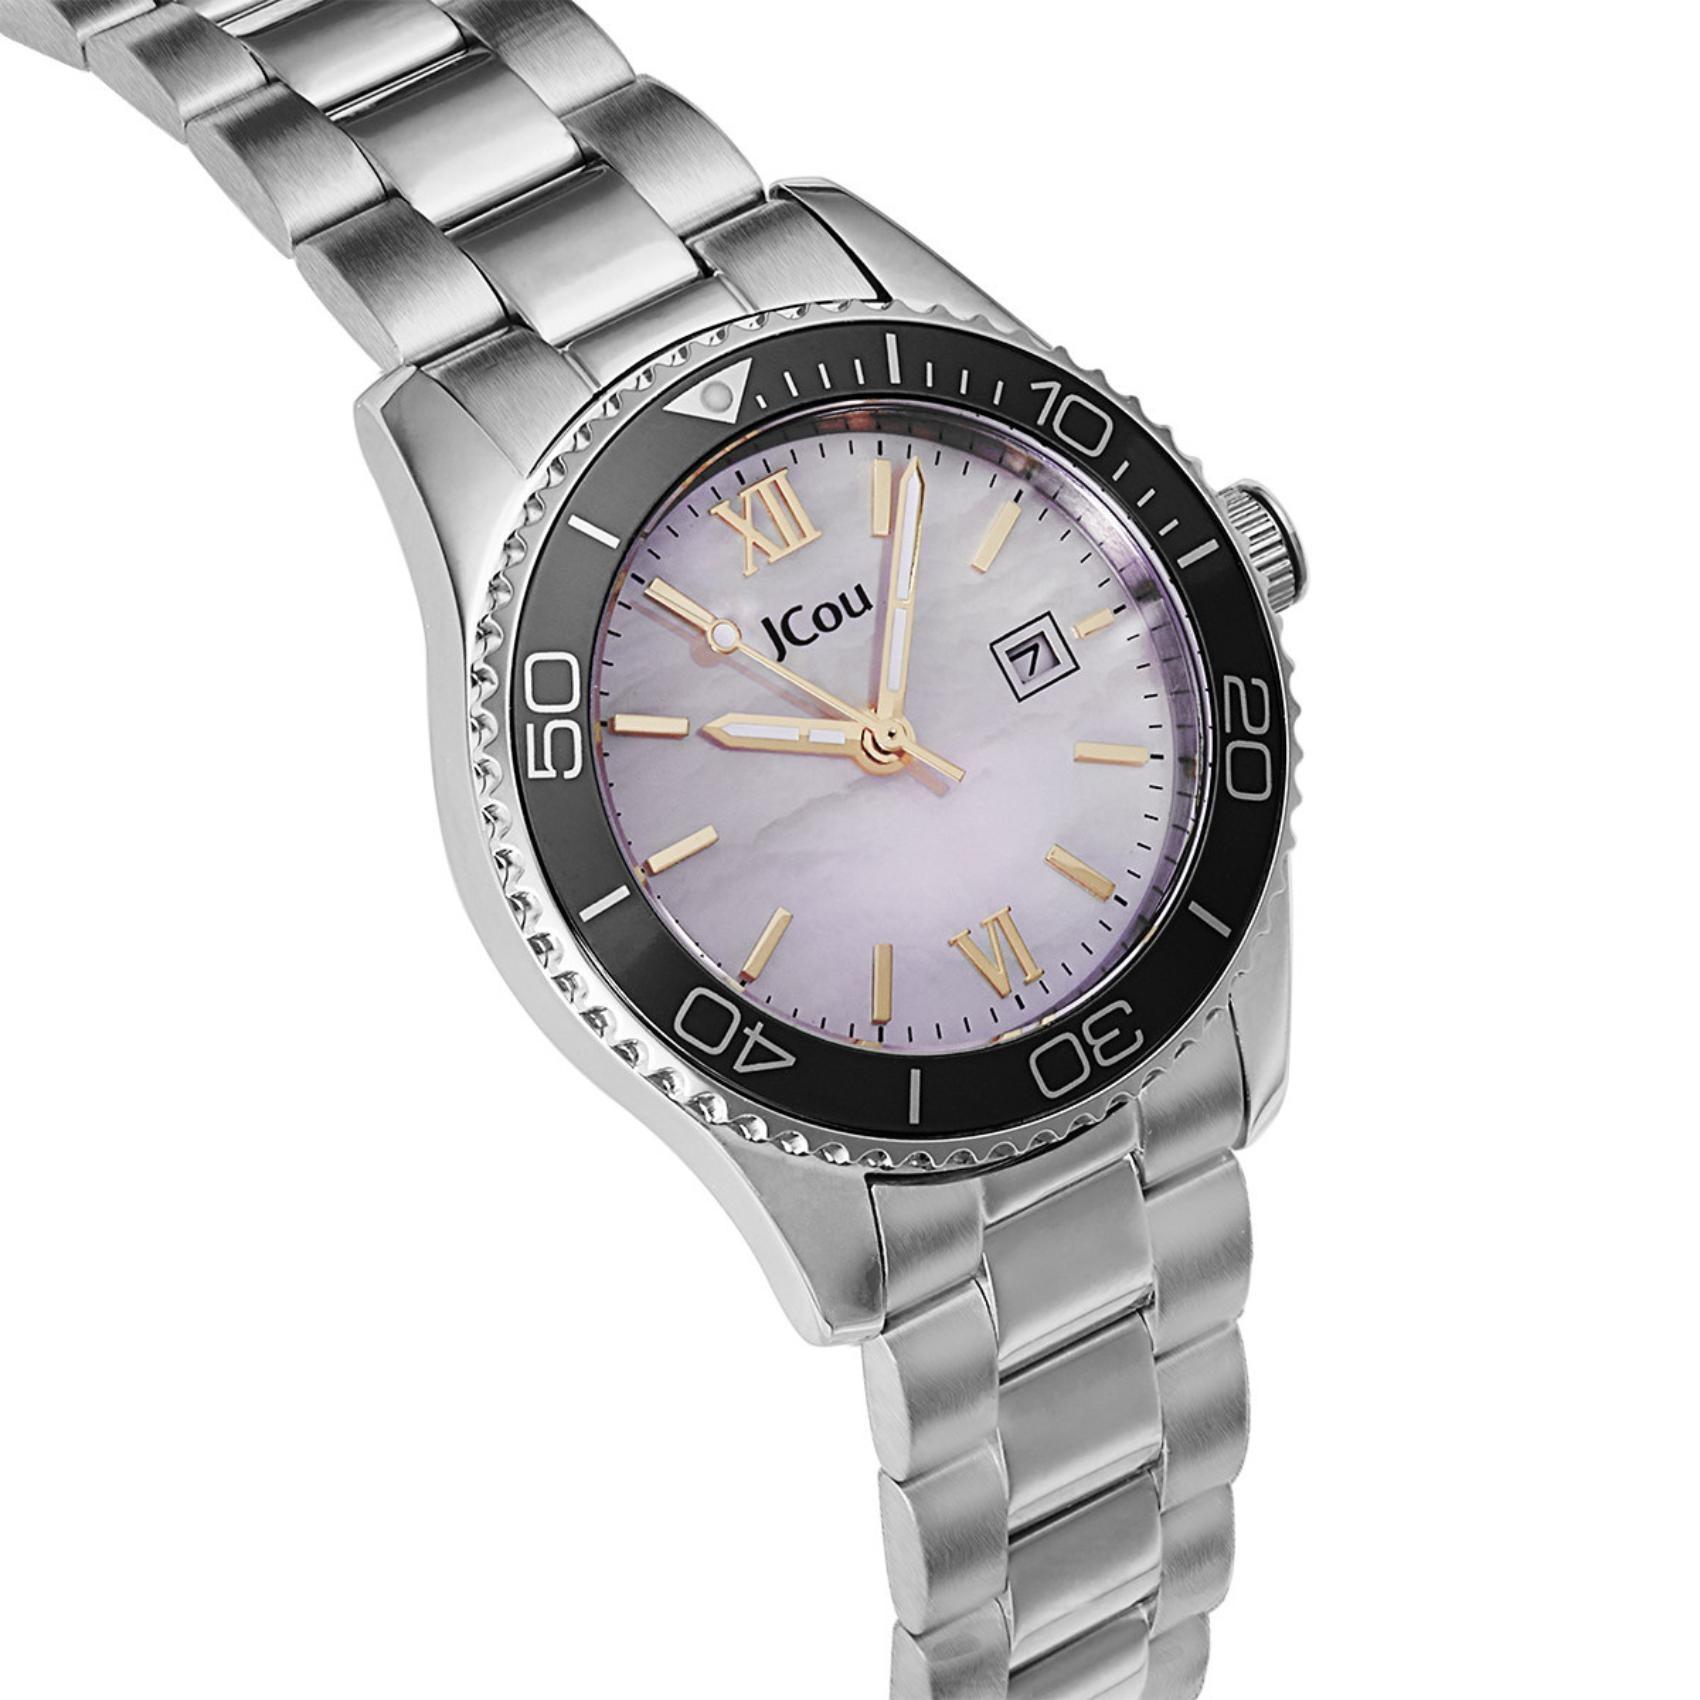 Γυναικέιο ρολόι JCOU Nerina JU19073-1 με ασημί ατσάλινο μπρασελέ και άσπρο φίλντισι καντράν διαμέτρου 32mm με ημερομηνία.